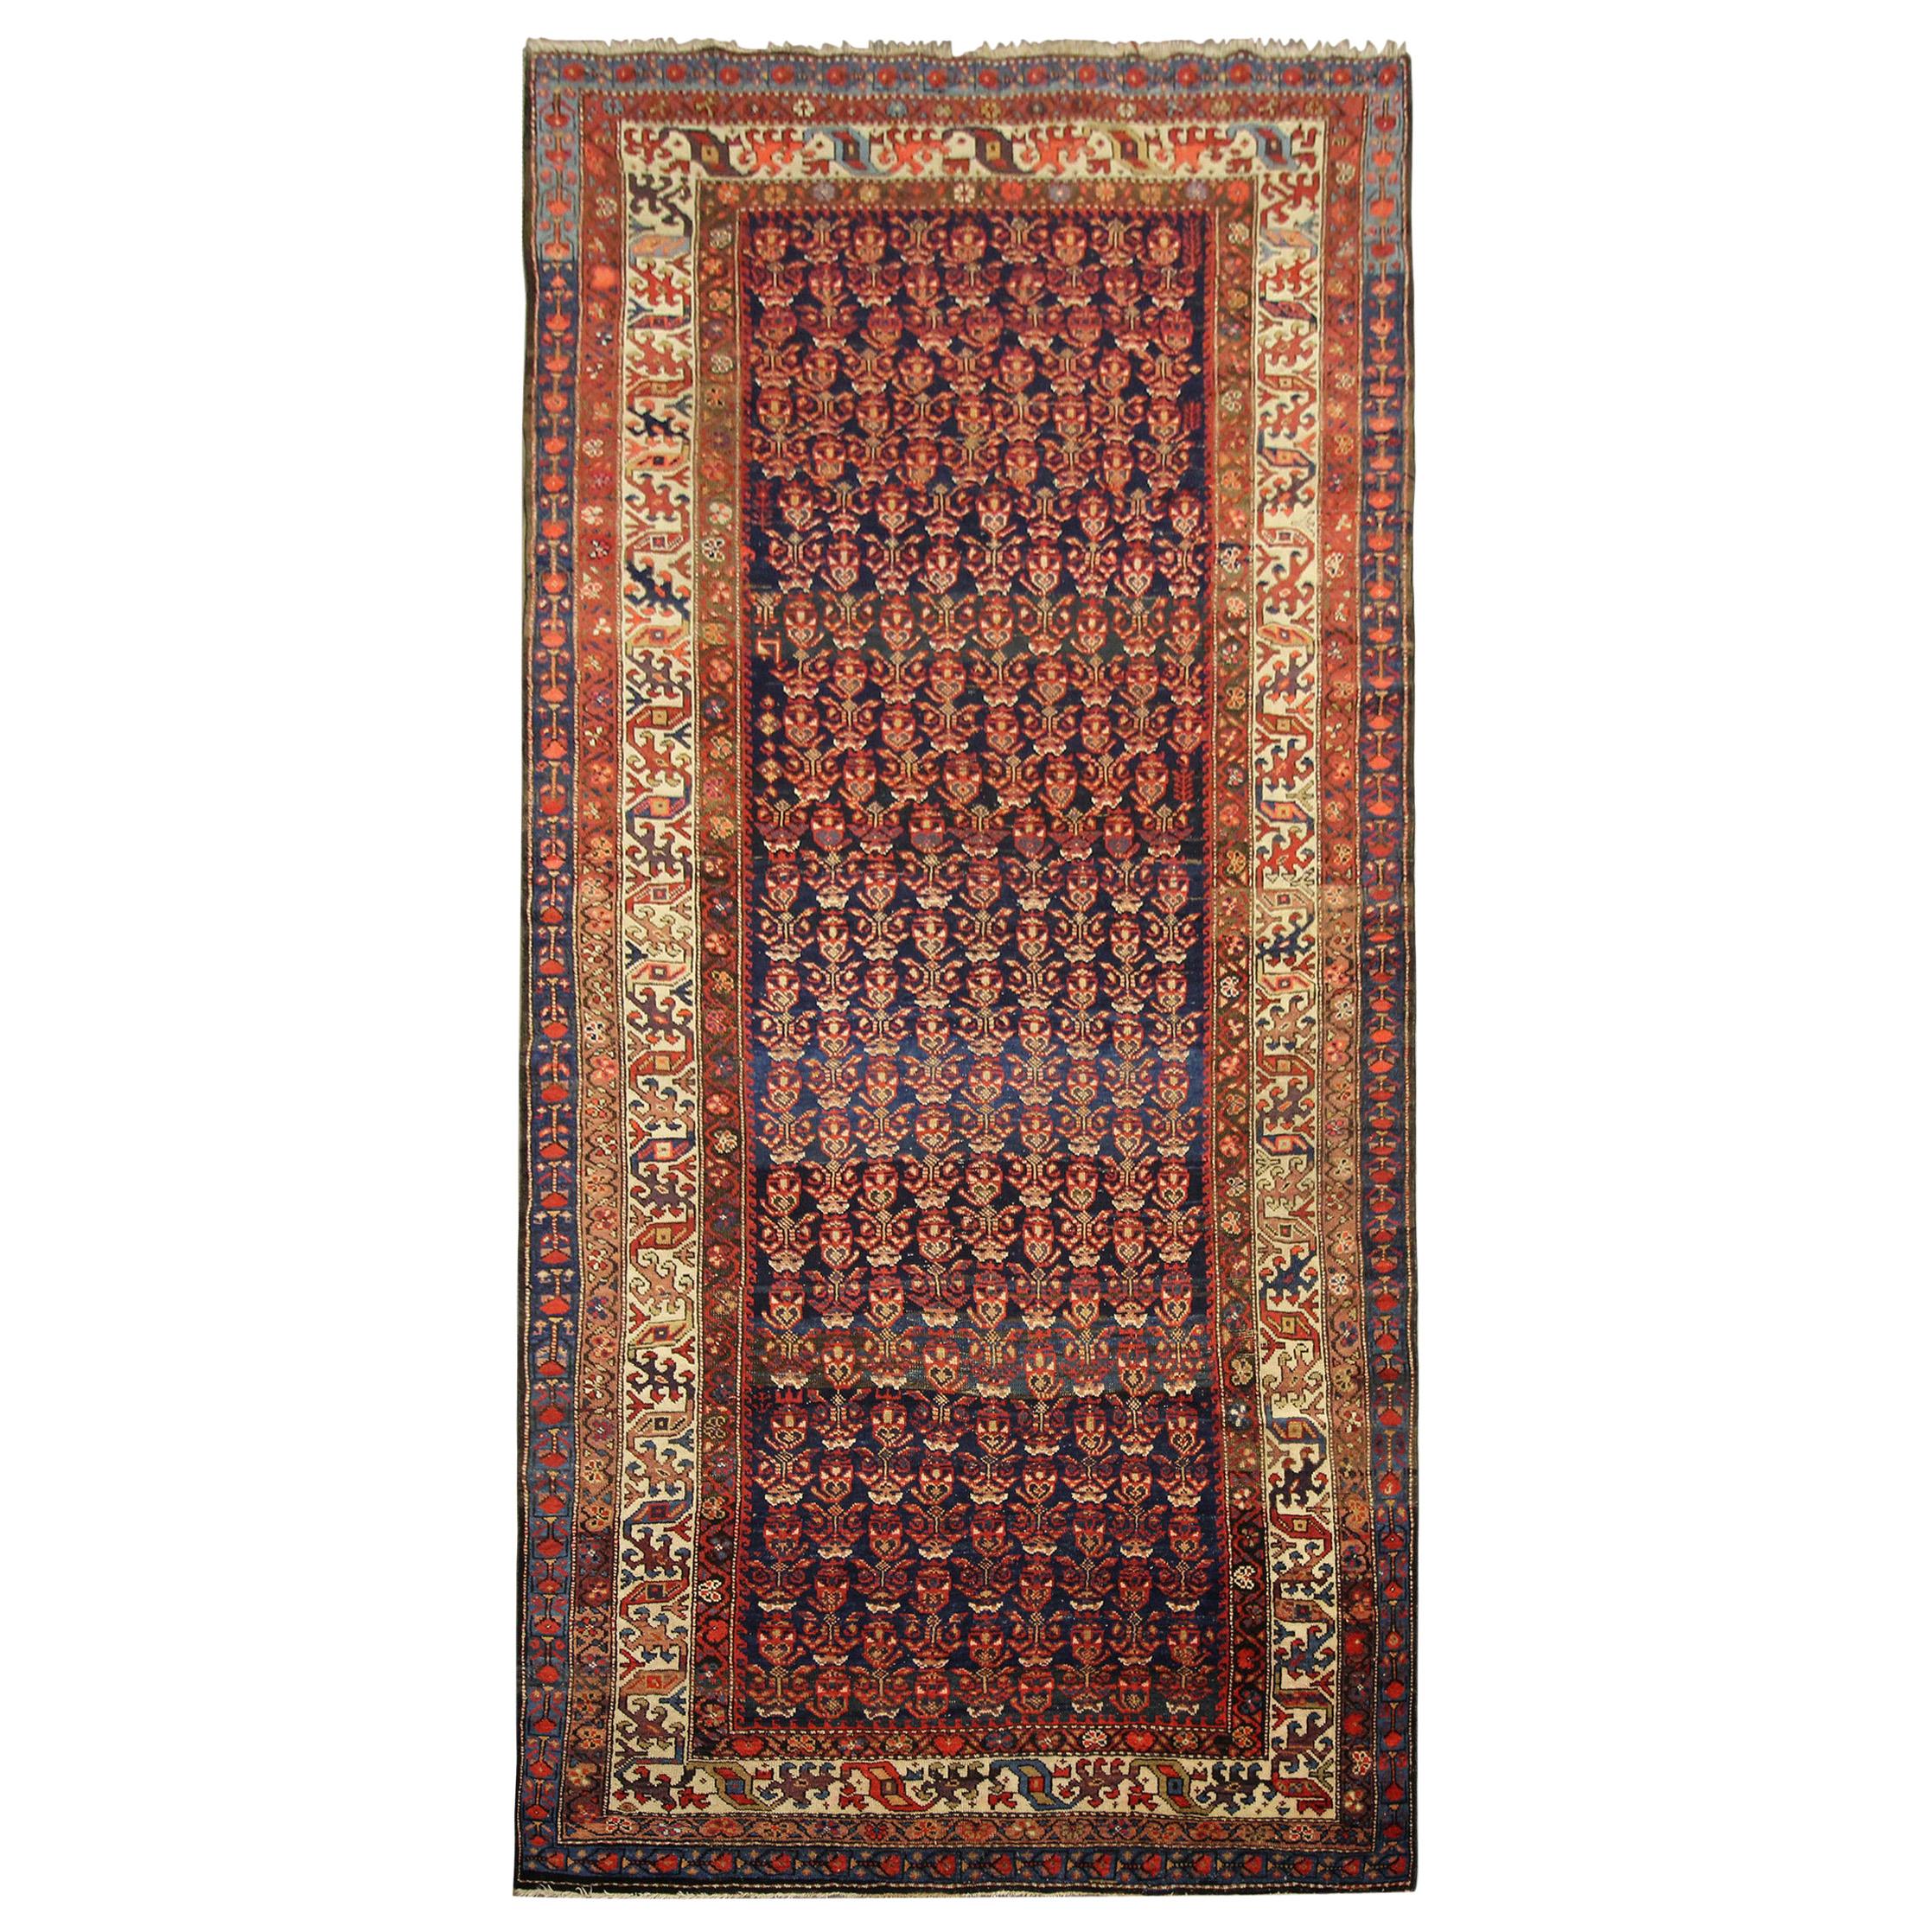 Antiker handgewebter traditioneller Wollteppich in Rostrot, Orientalischer Teppich